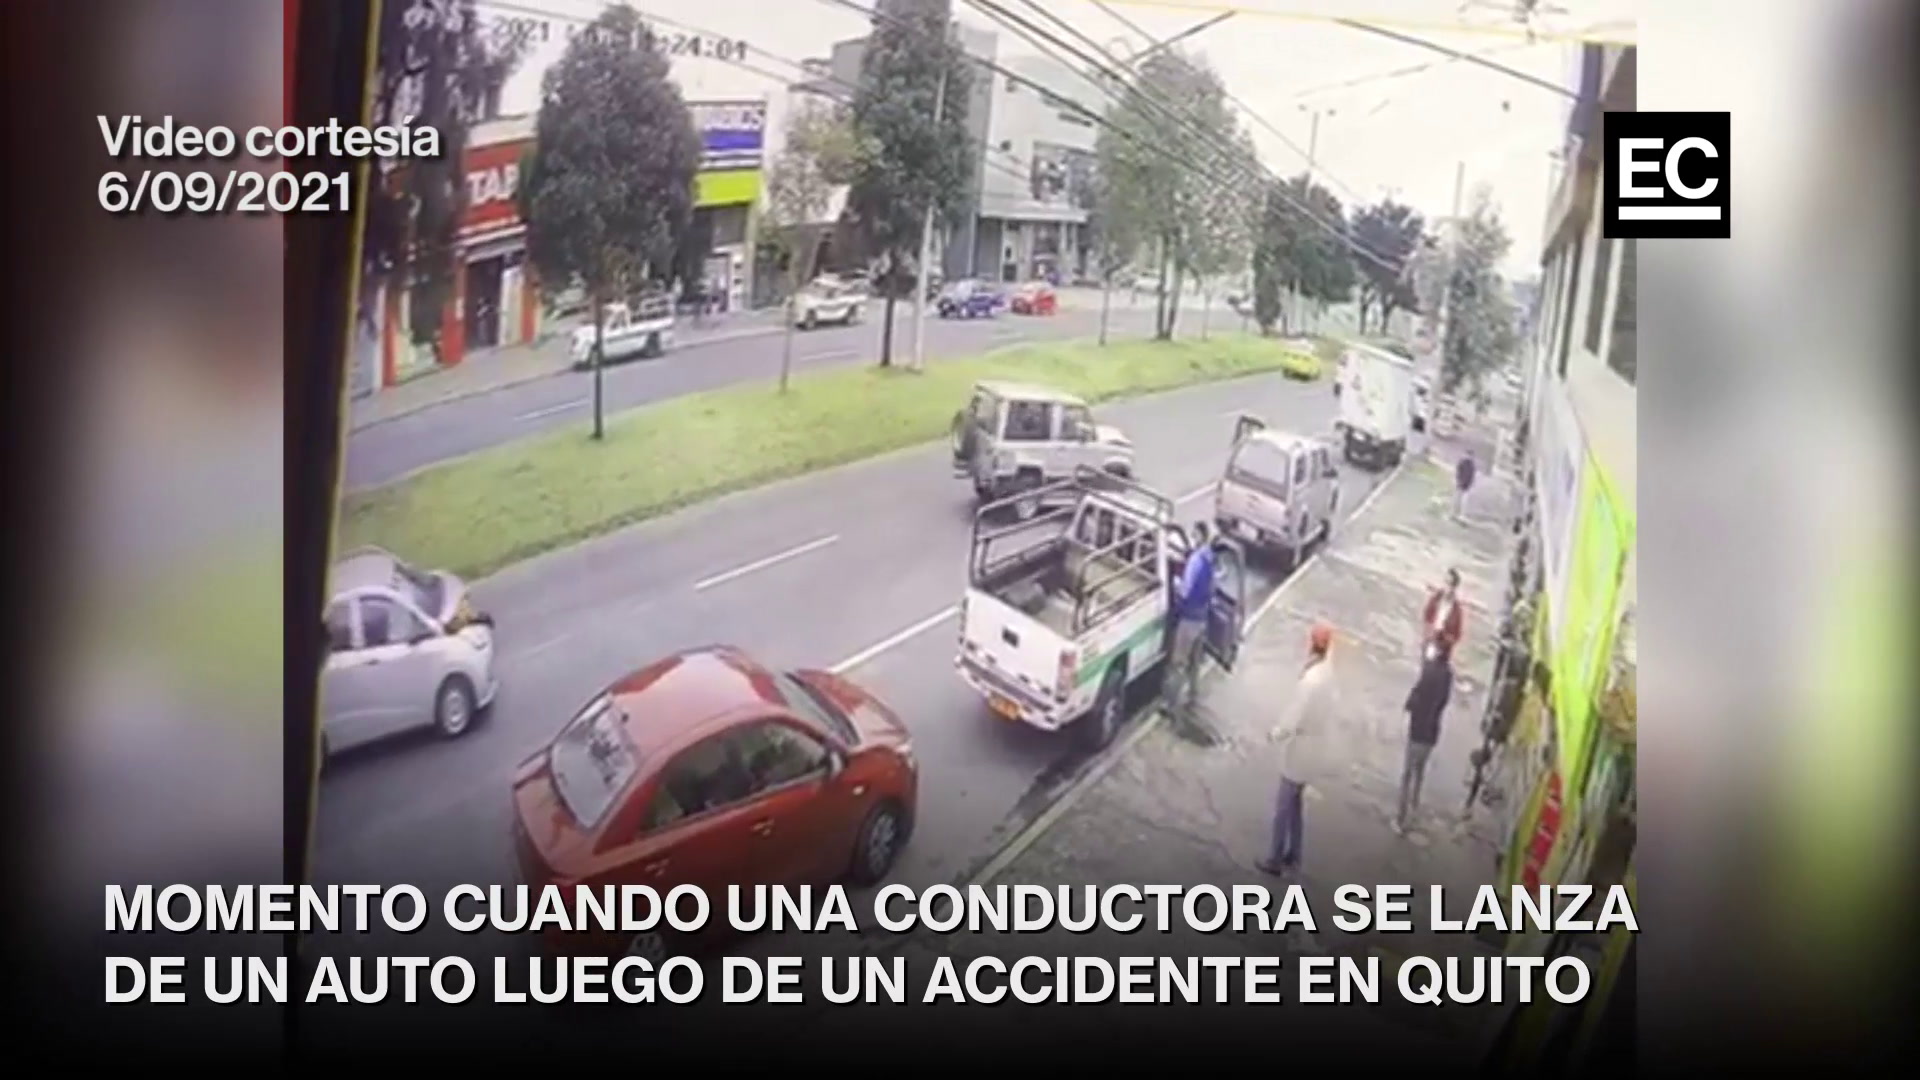 El accidente se registró en la av. Mariscal Sucre y José Figueroa, sector de San Carlos. Tras el choque entre tres vehículos, aparece un auto con la parte delantera destrozada y el motor incendiándose. Captura video